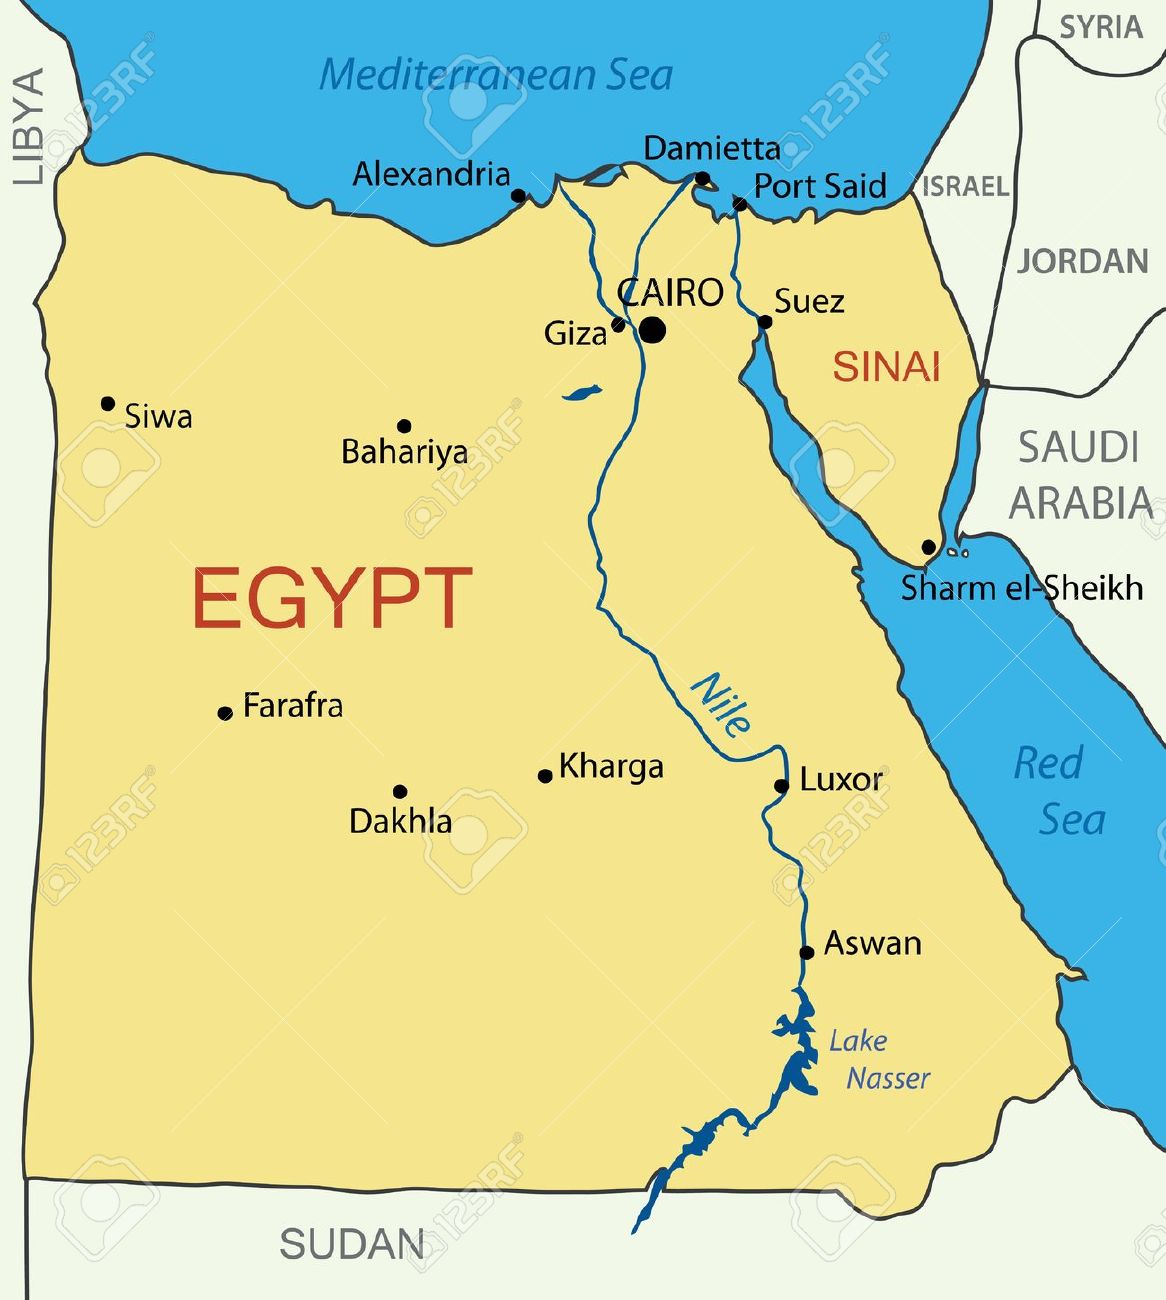 Excursiones en El Cairo, Luxor y Abu Simbel por carretera.